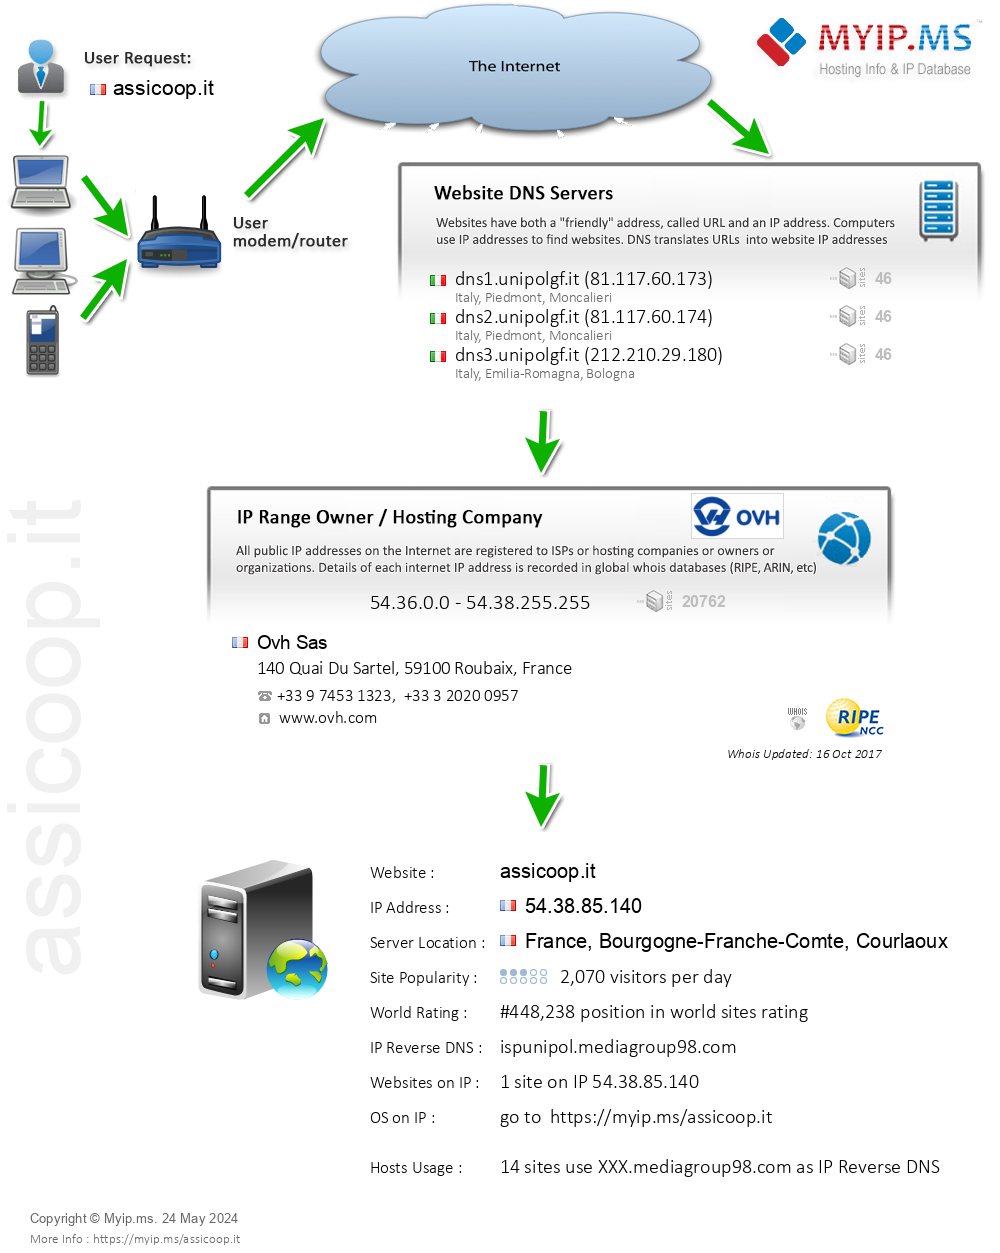 Assicoop.it - Website Hosting Visual IP Diagram